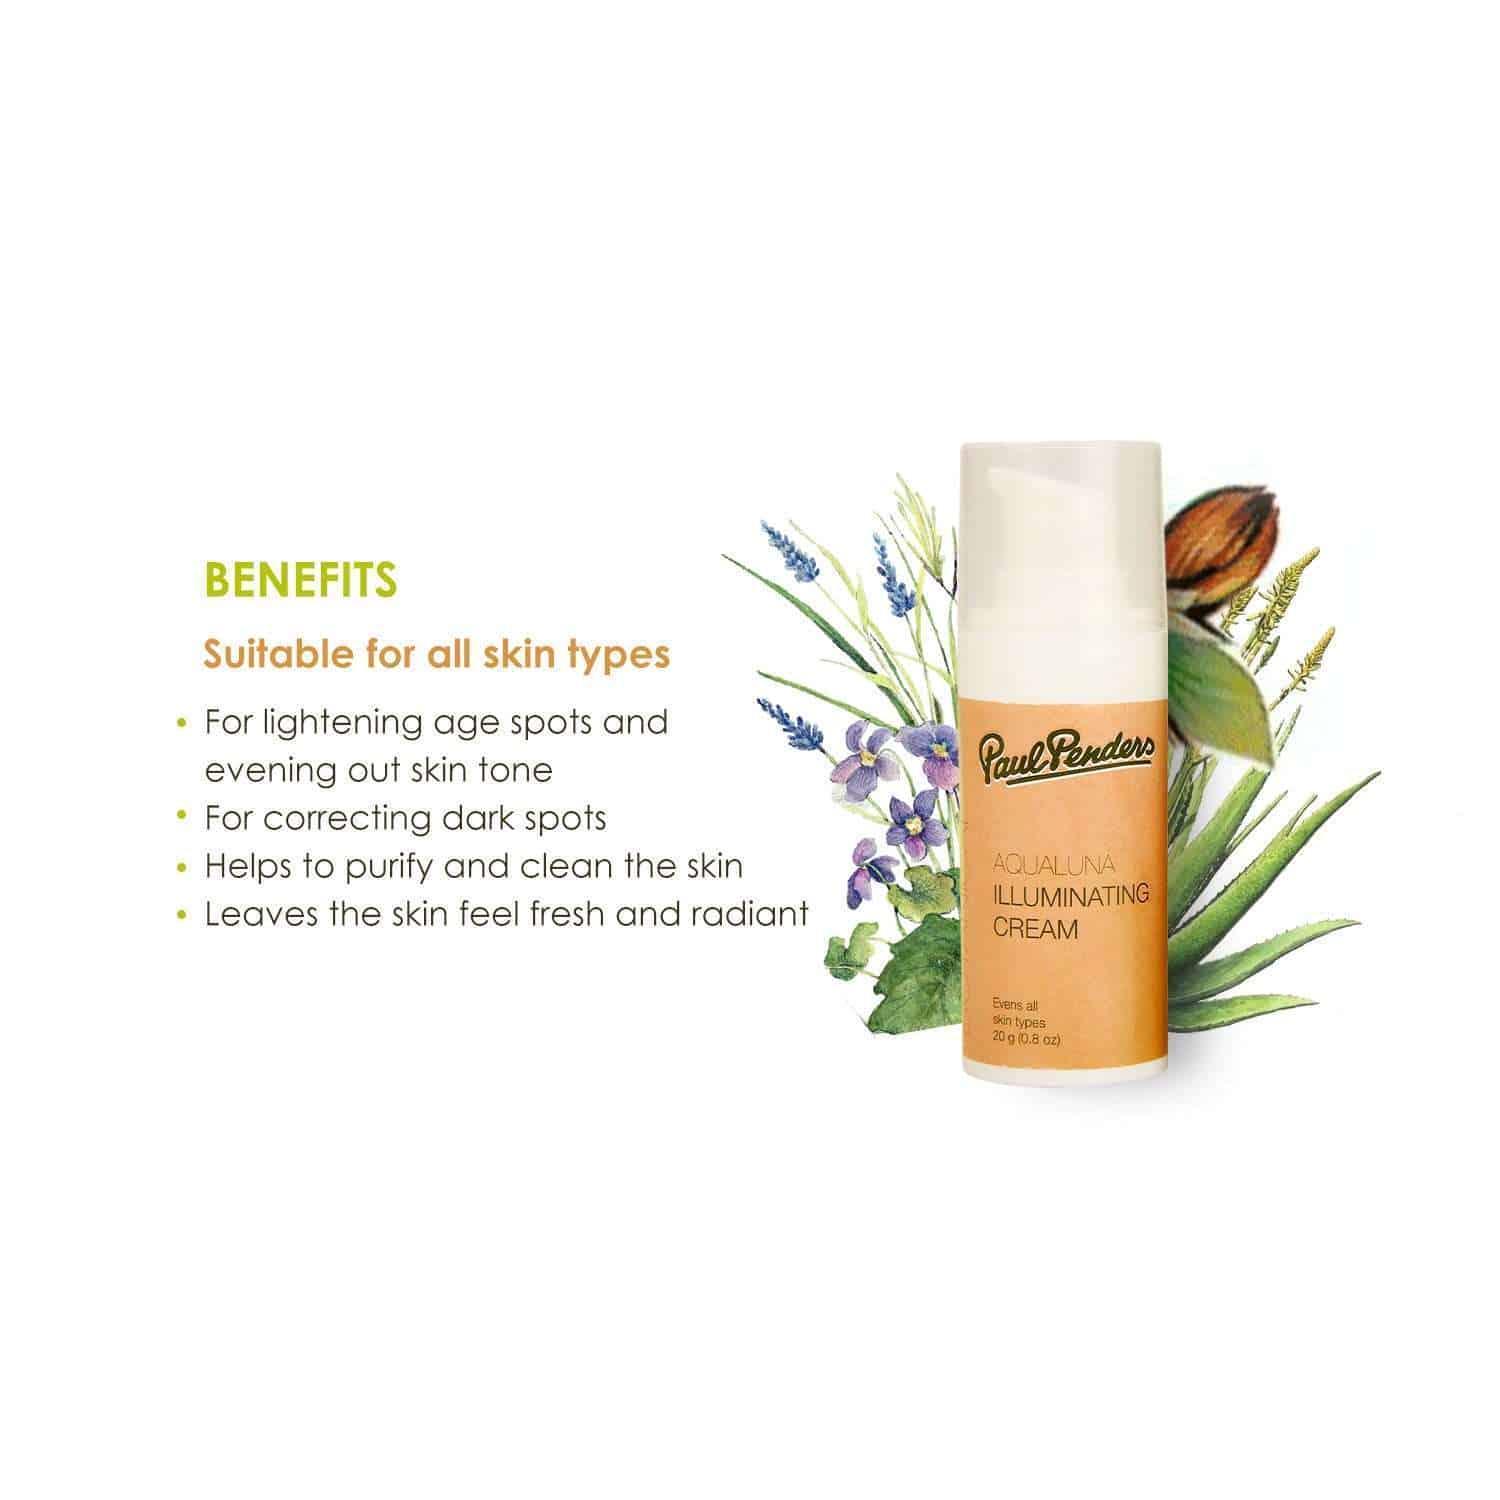 Paul Penders Aqualuna Illuminating Cream | Moisturizer For Treating Uneven Skin Tones | Anti Aging | Skincare 20g